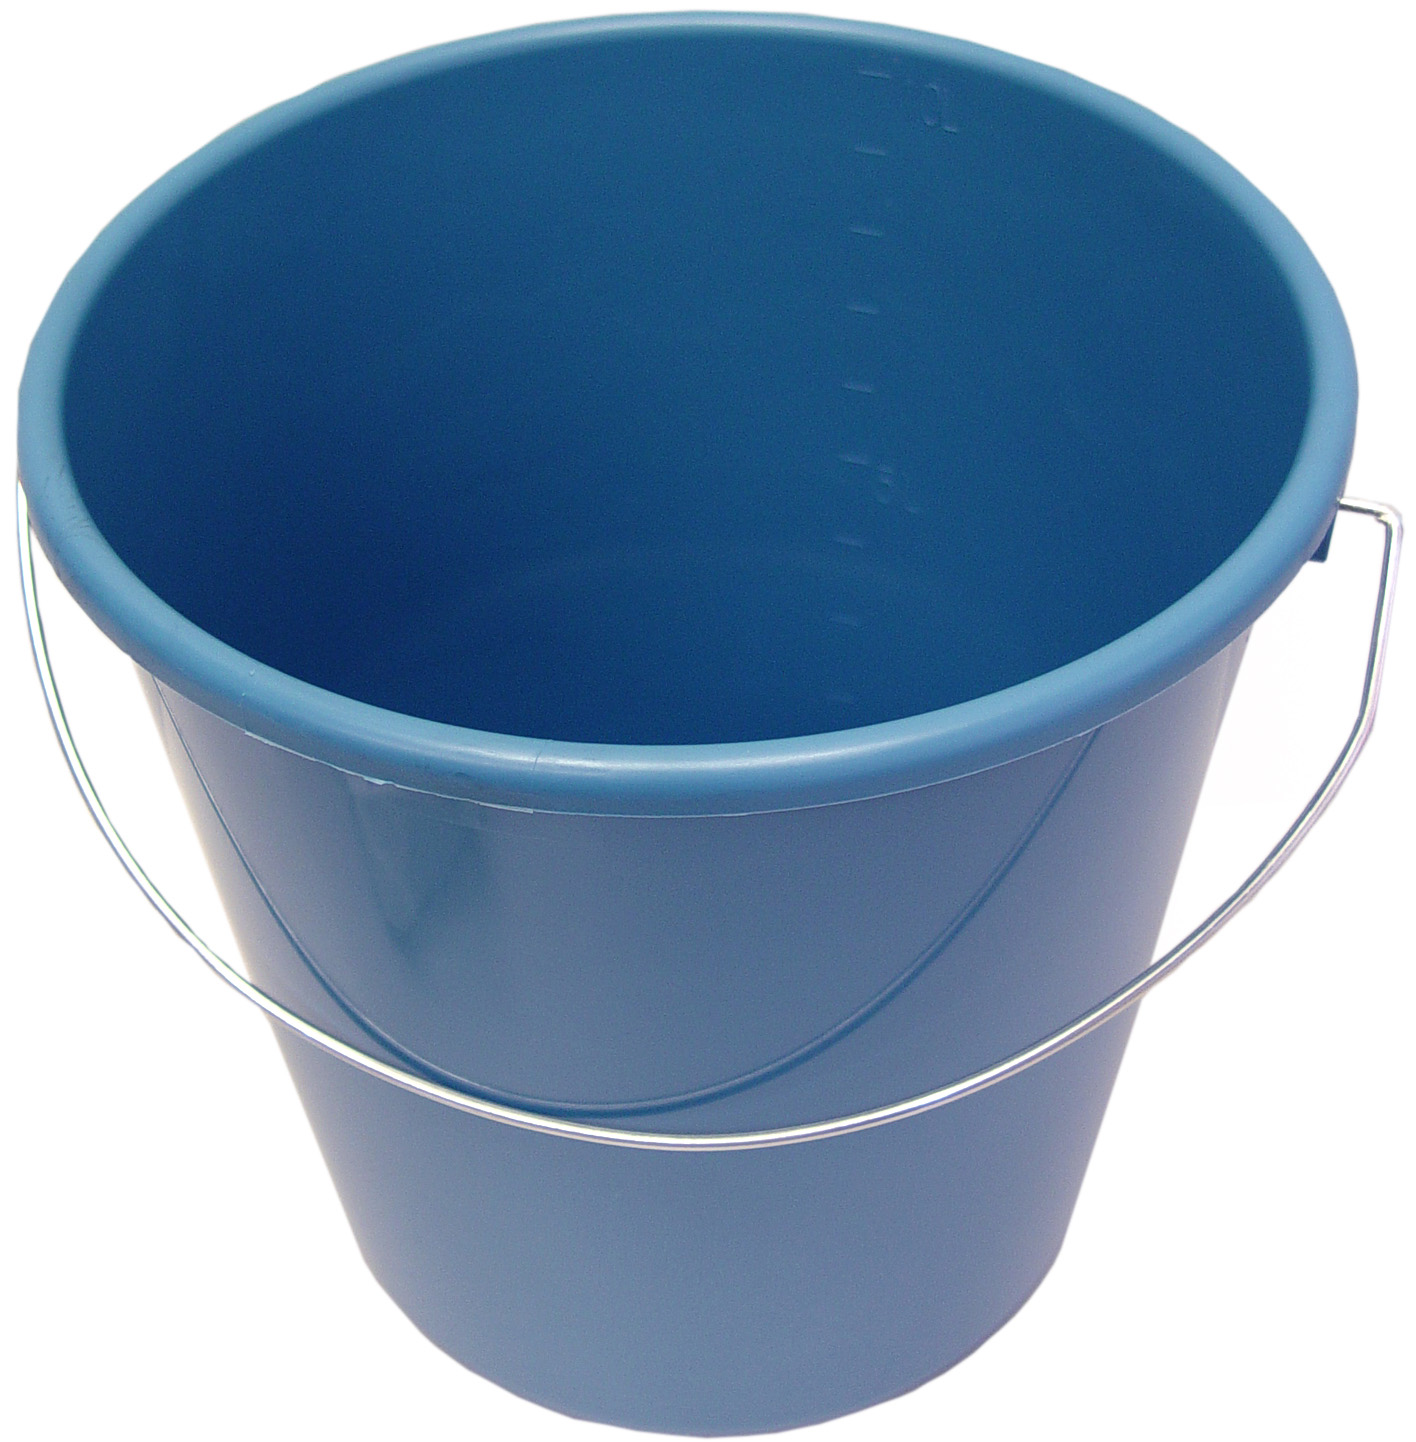 02348 - houshold bucket, 5 liter